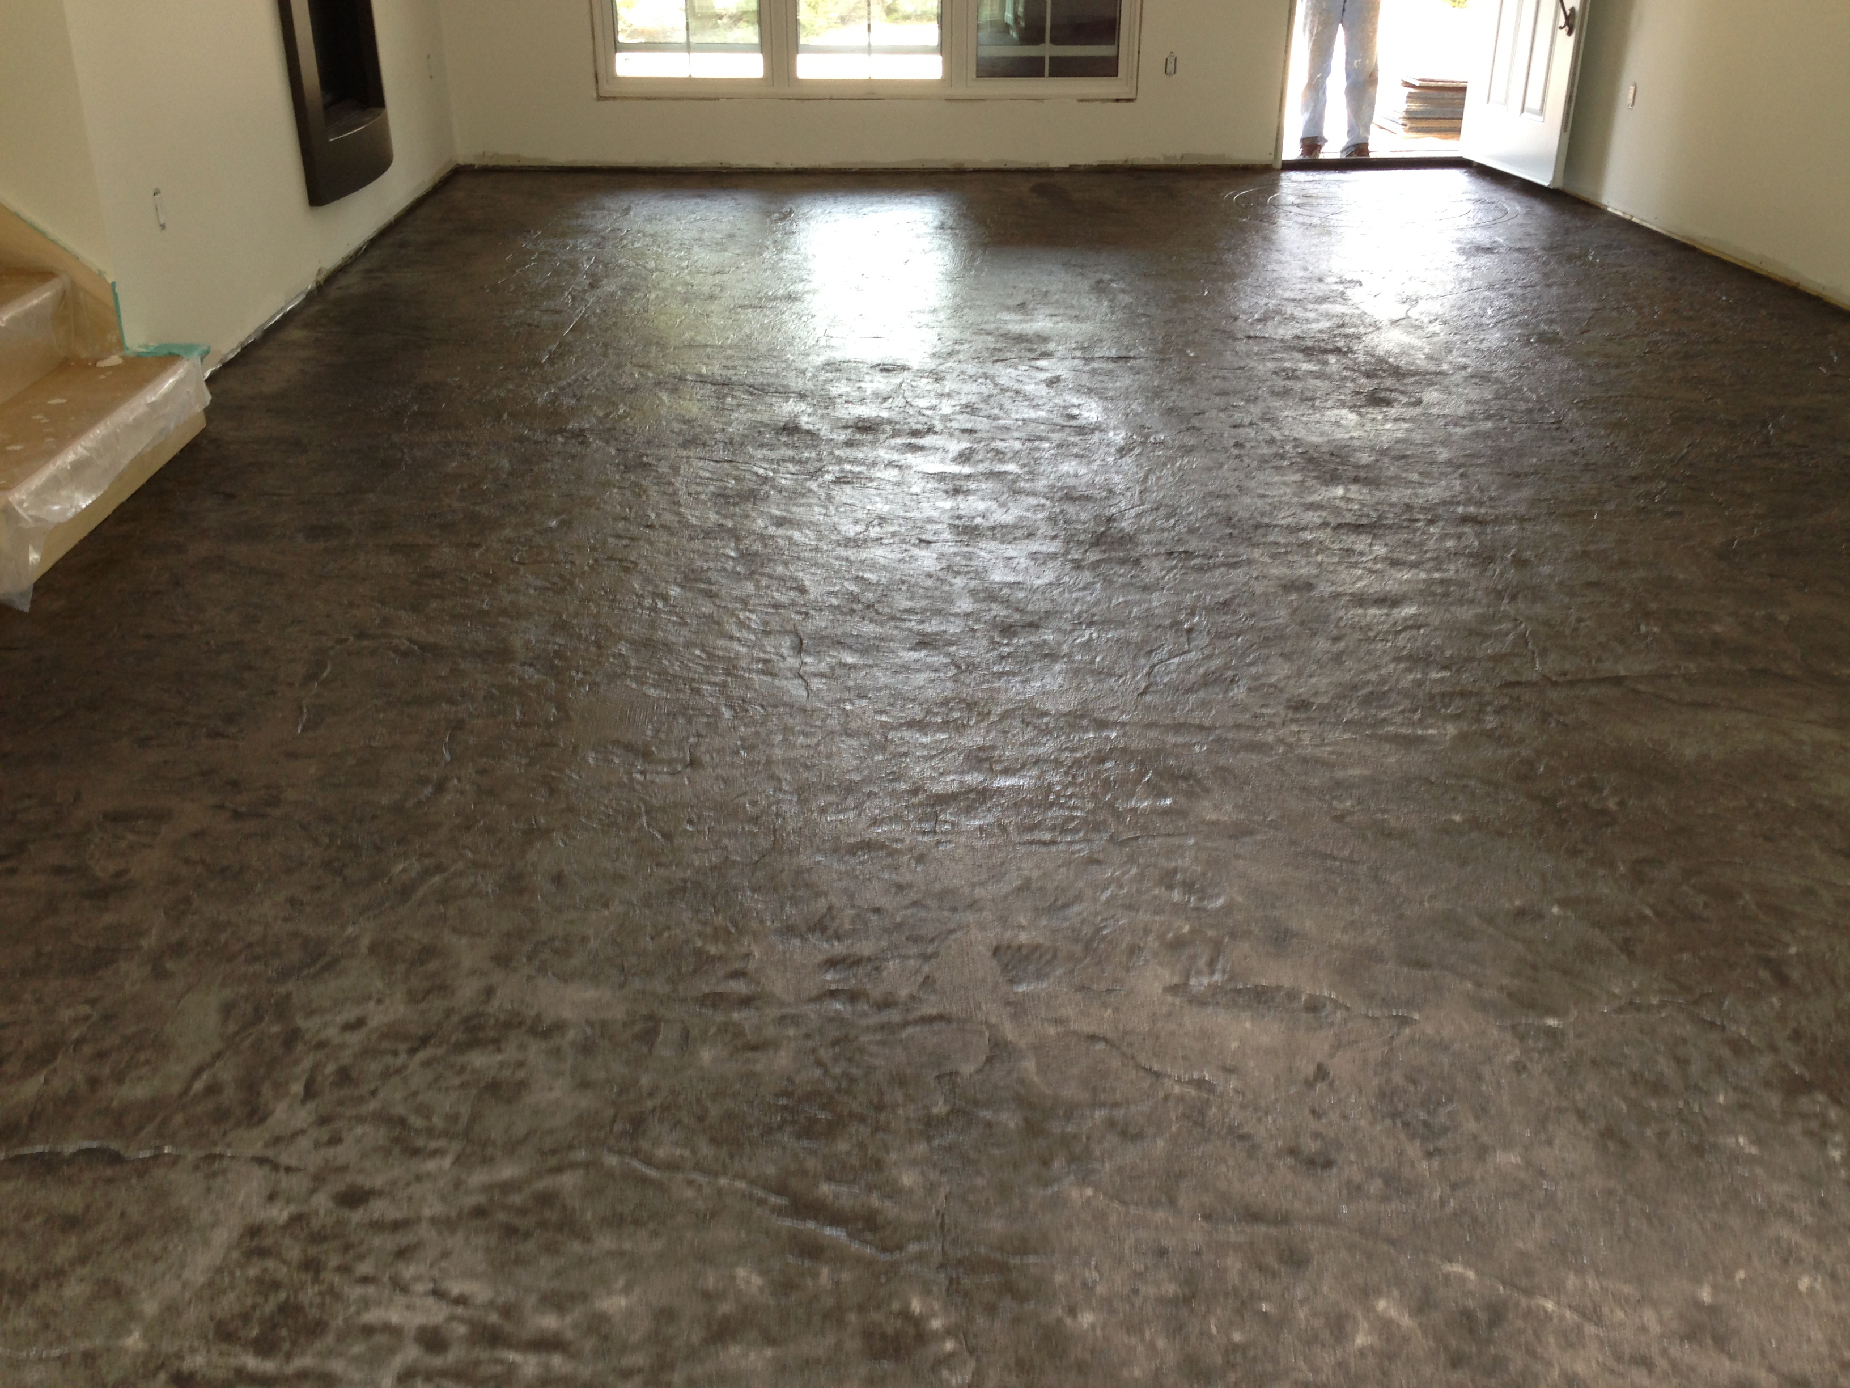 Residential interior concrete floor